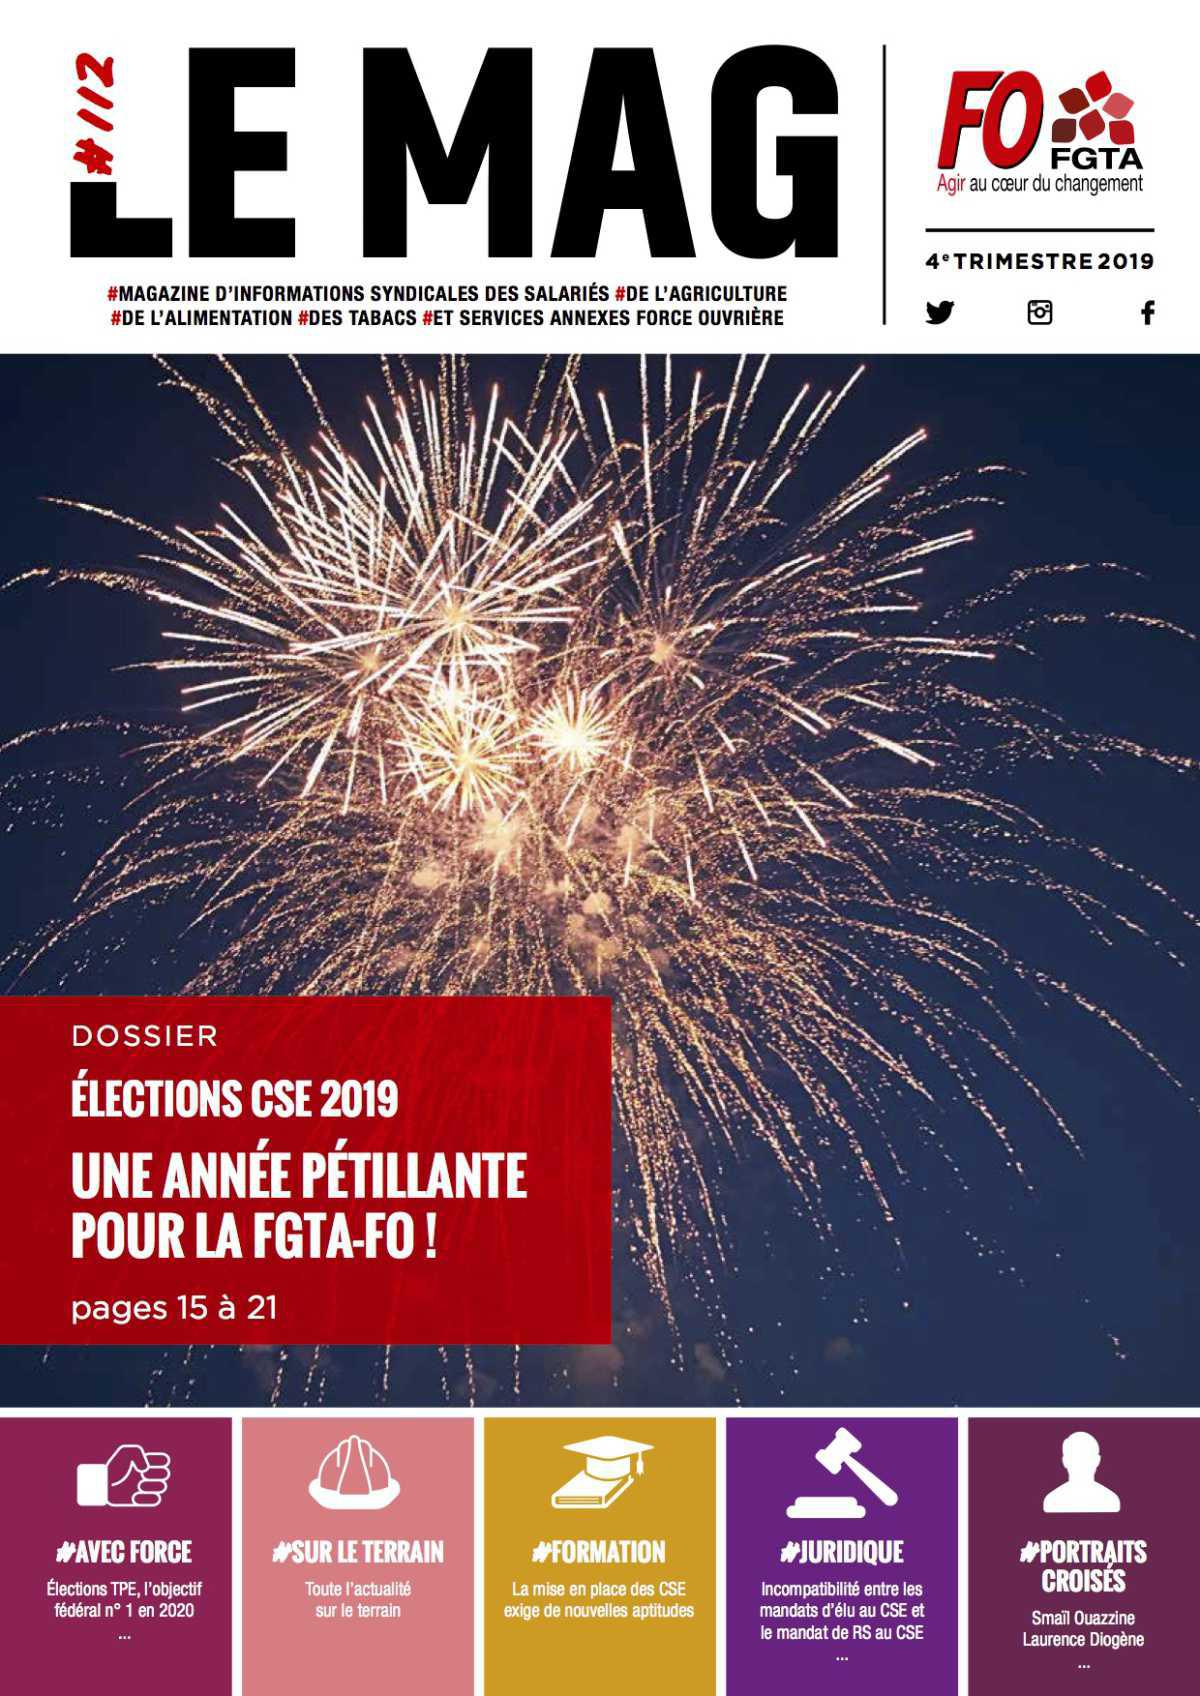 Dossier élections CSE 2019-Une année pétillante pour la FGTA-FO!